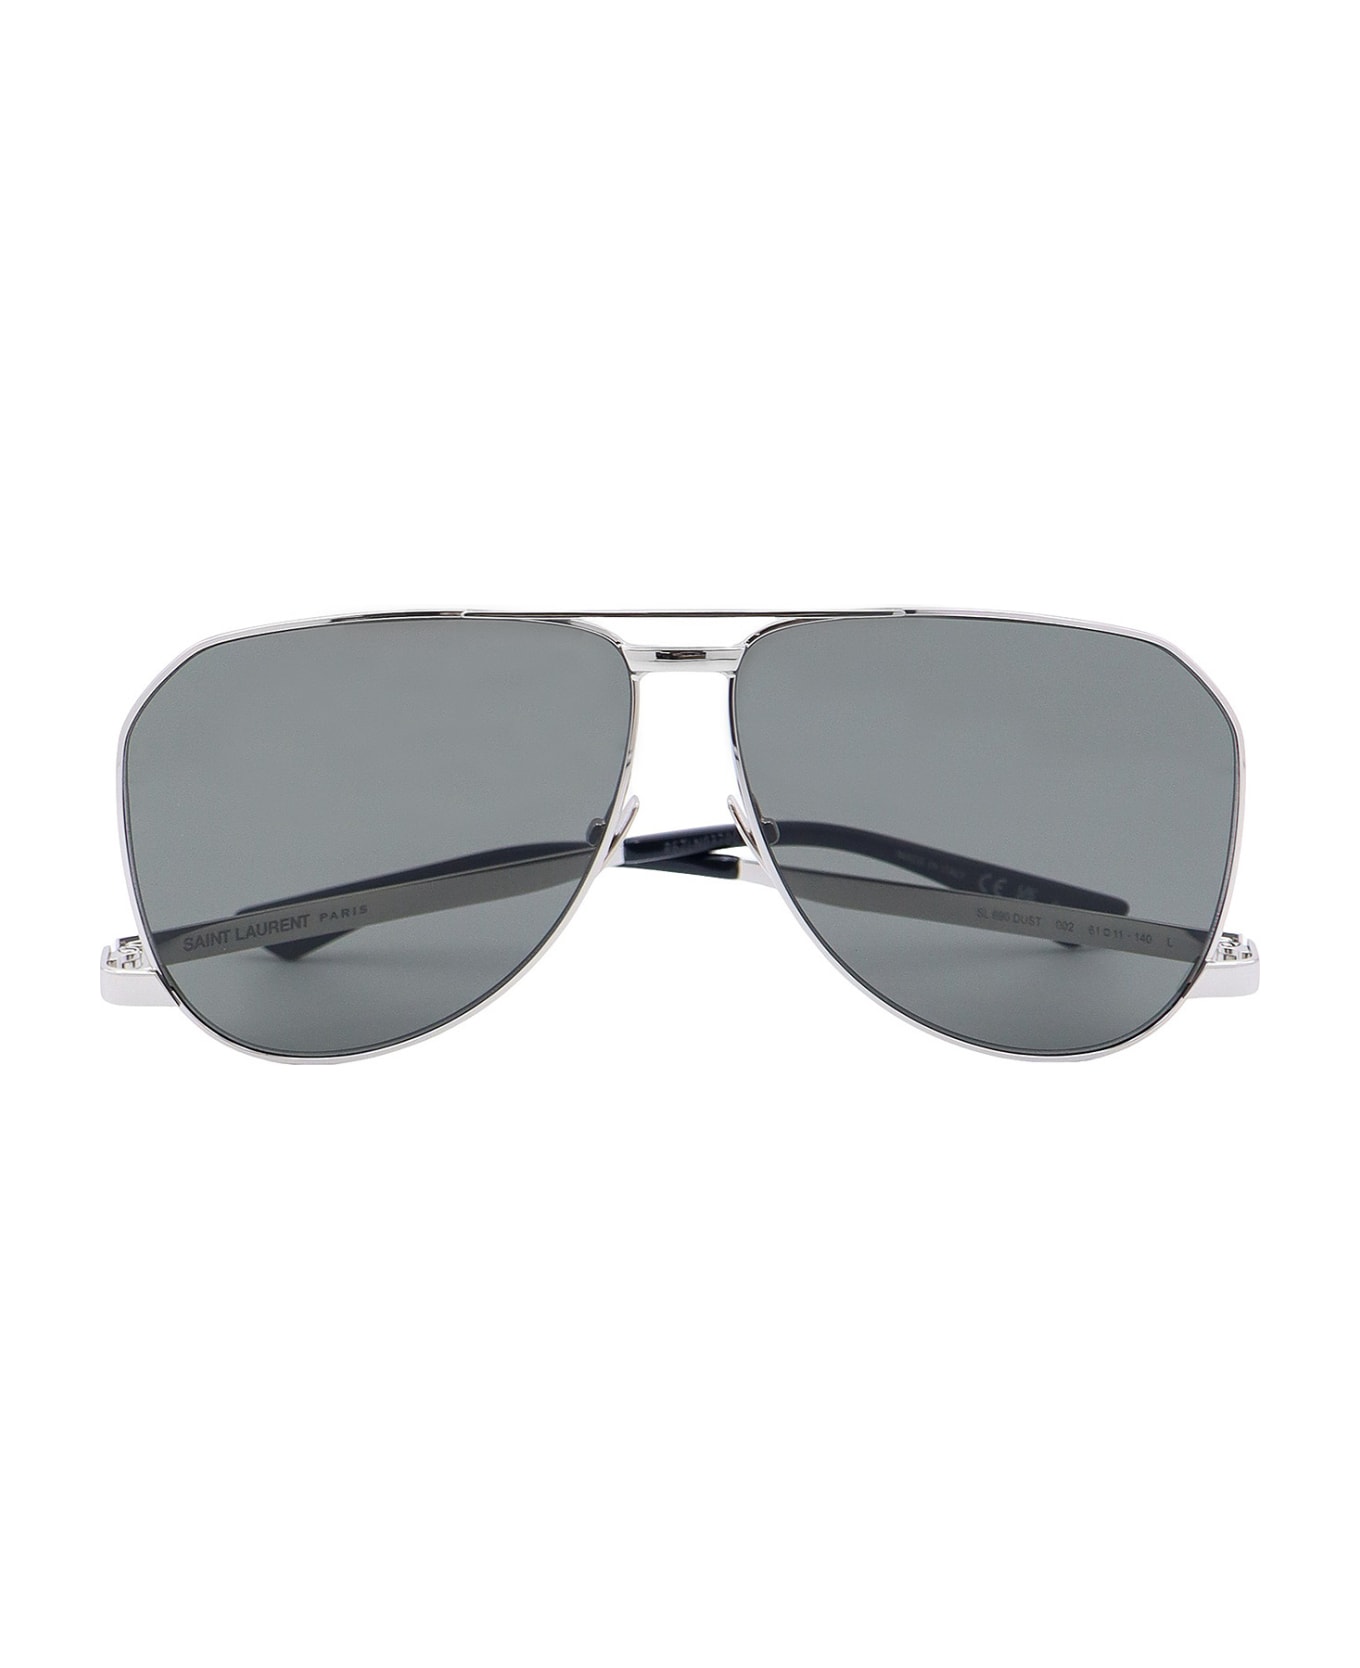 Saint Laurent Sl 690 Dust Sunglasses - Silver